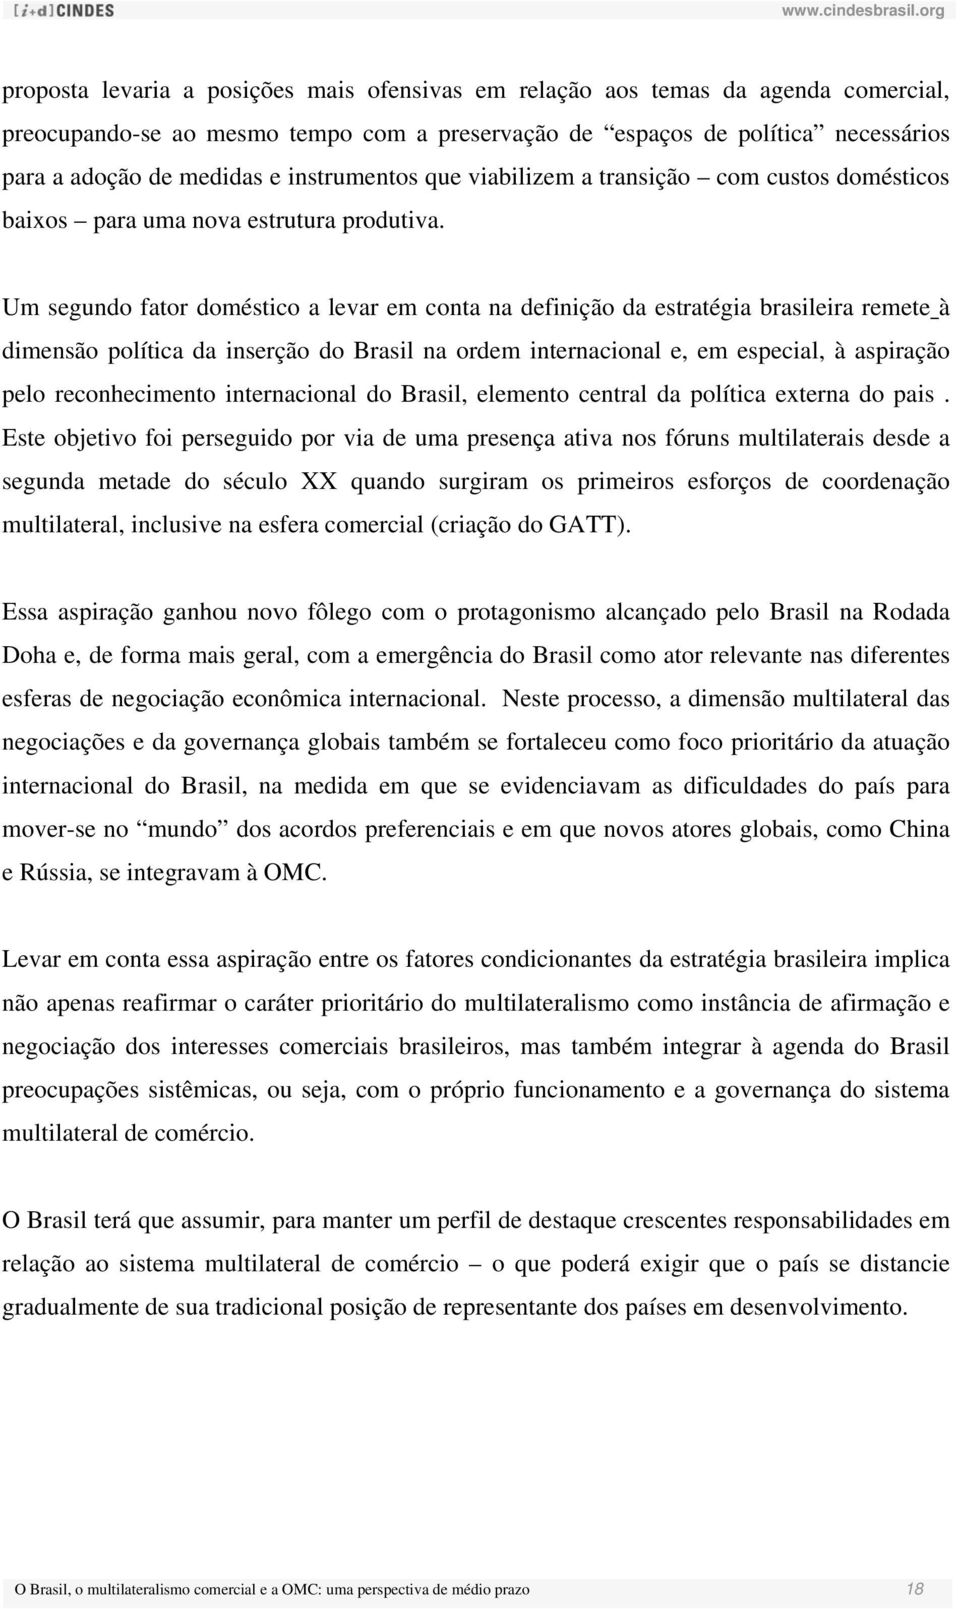 Um segundo fator doméstico a levar em conta na definição da estratégia brasileira remete à dimensão política da inserção do Brasil na ordem internacional e, em especial, à aspiração pelo